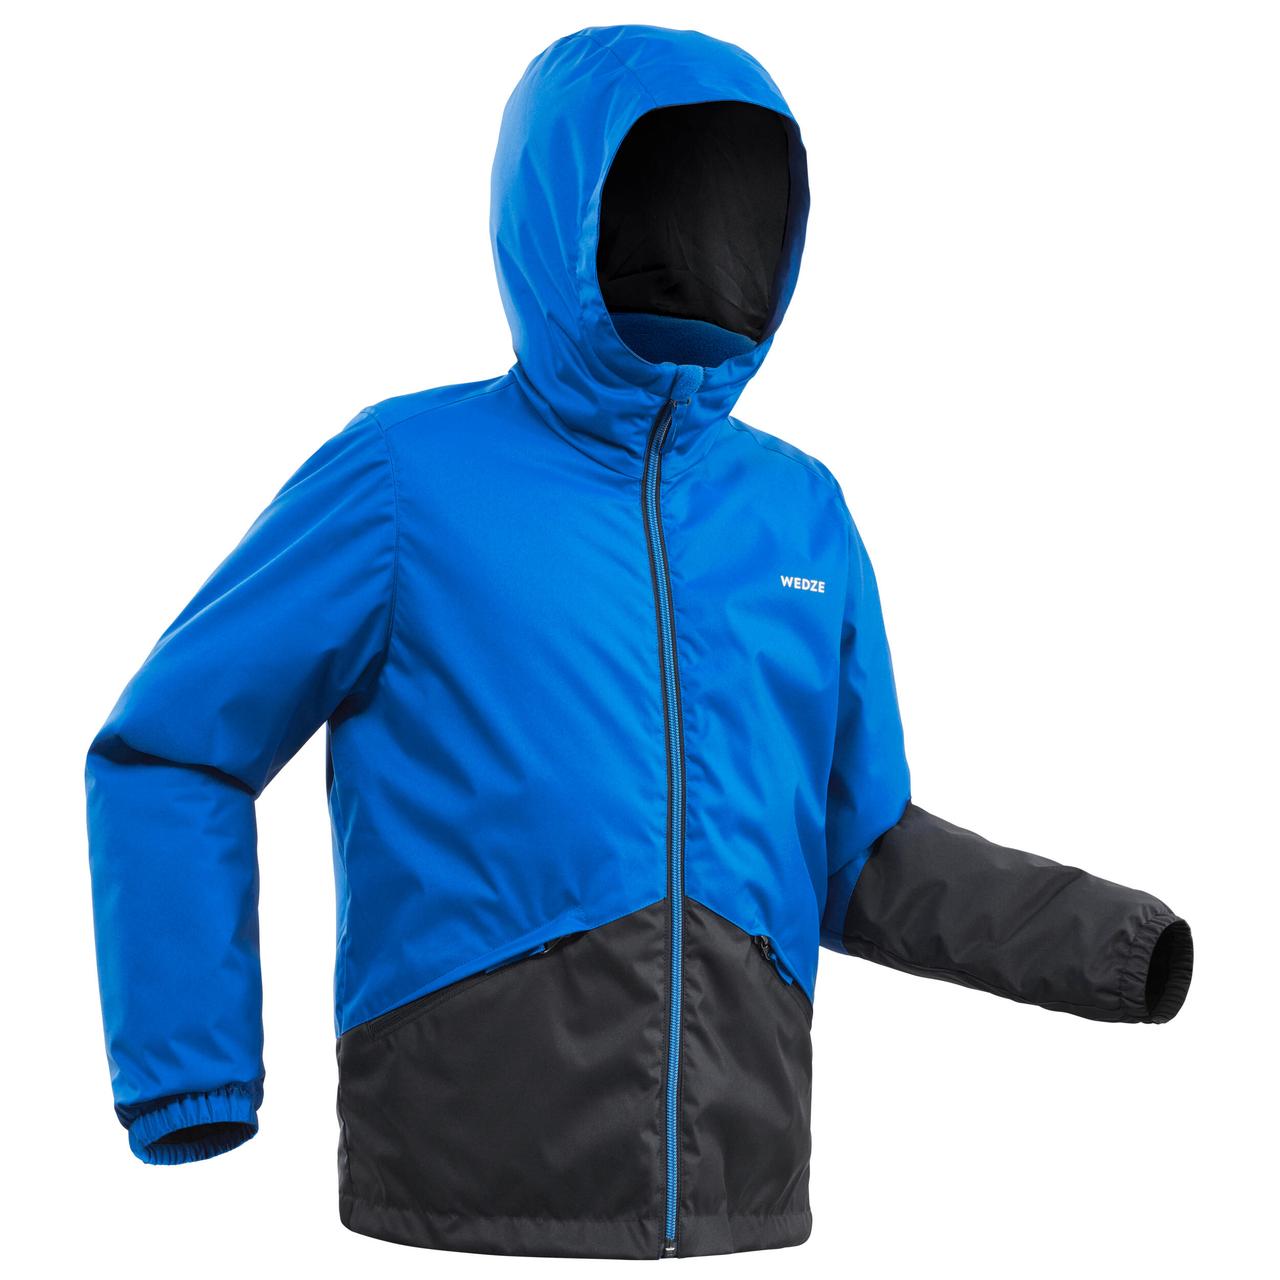 Куртка дитяча 100 для лижного спорту синя - 12 р 143-150 см